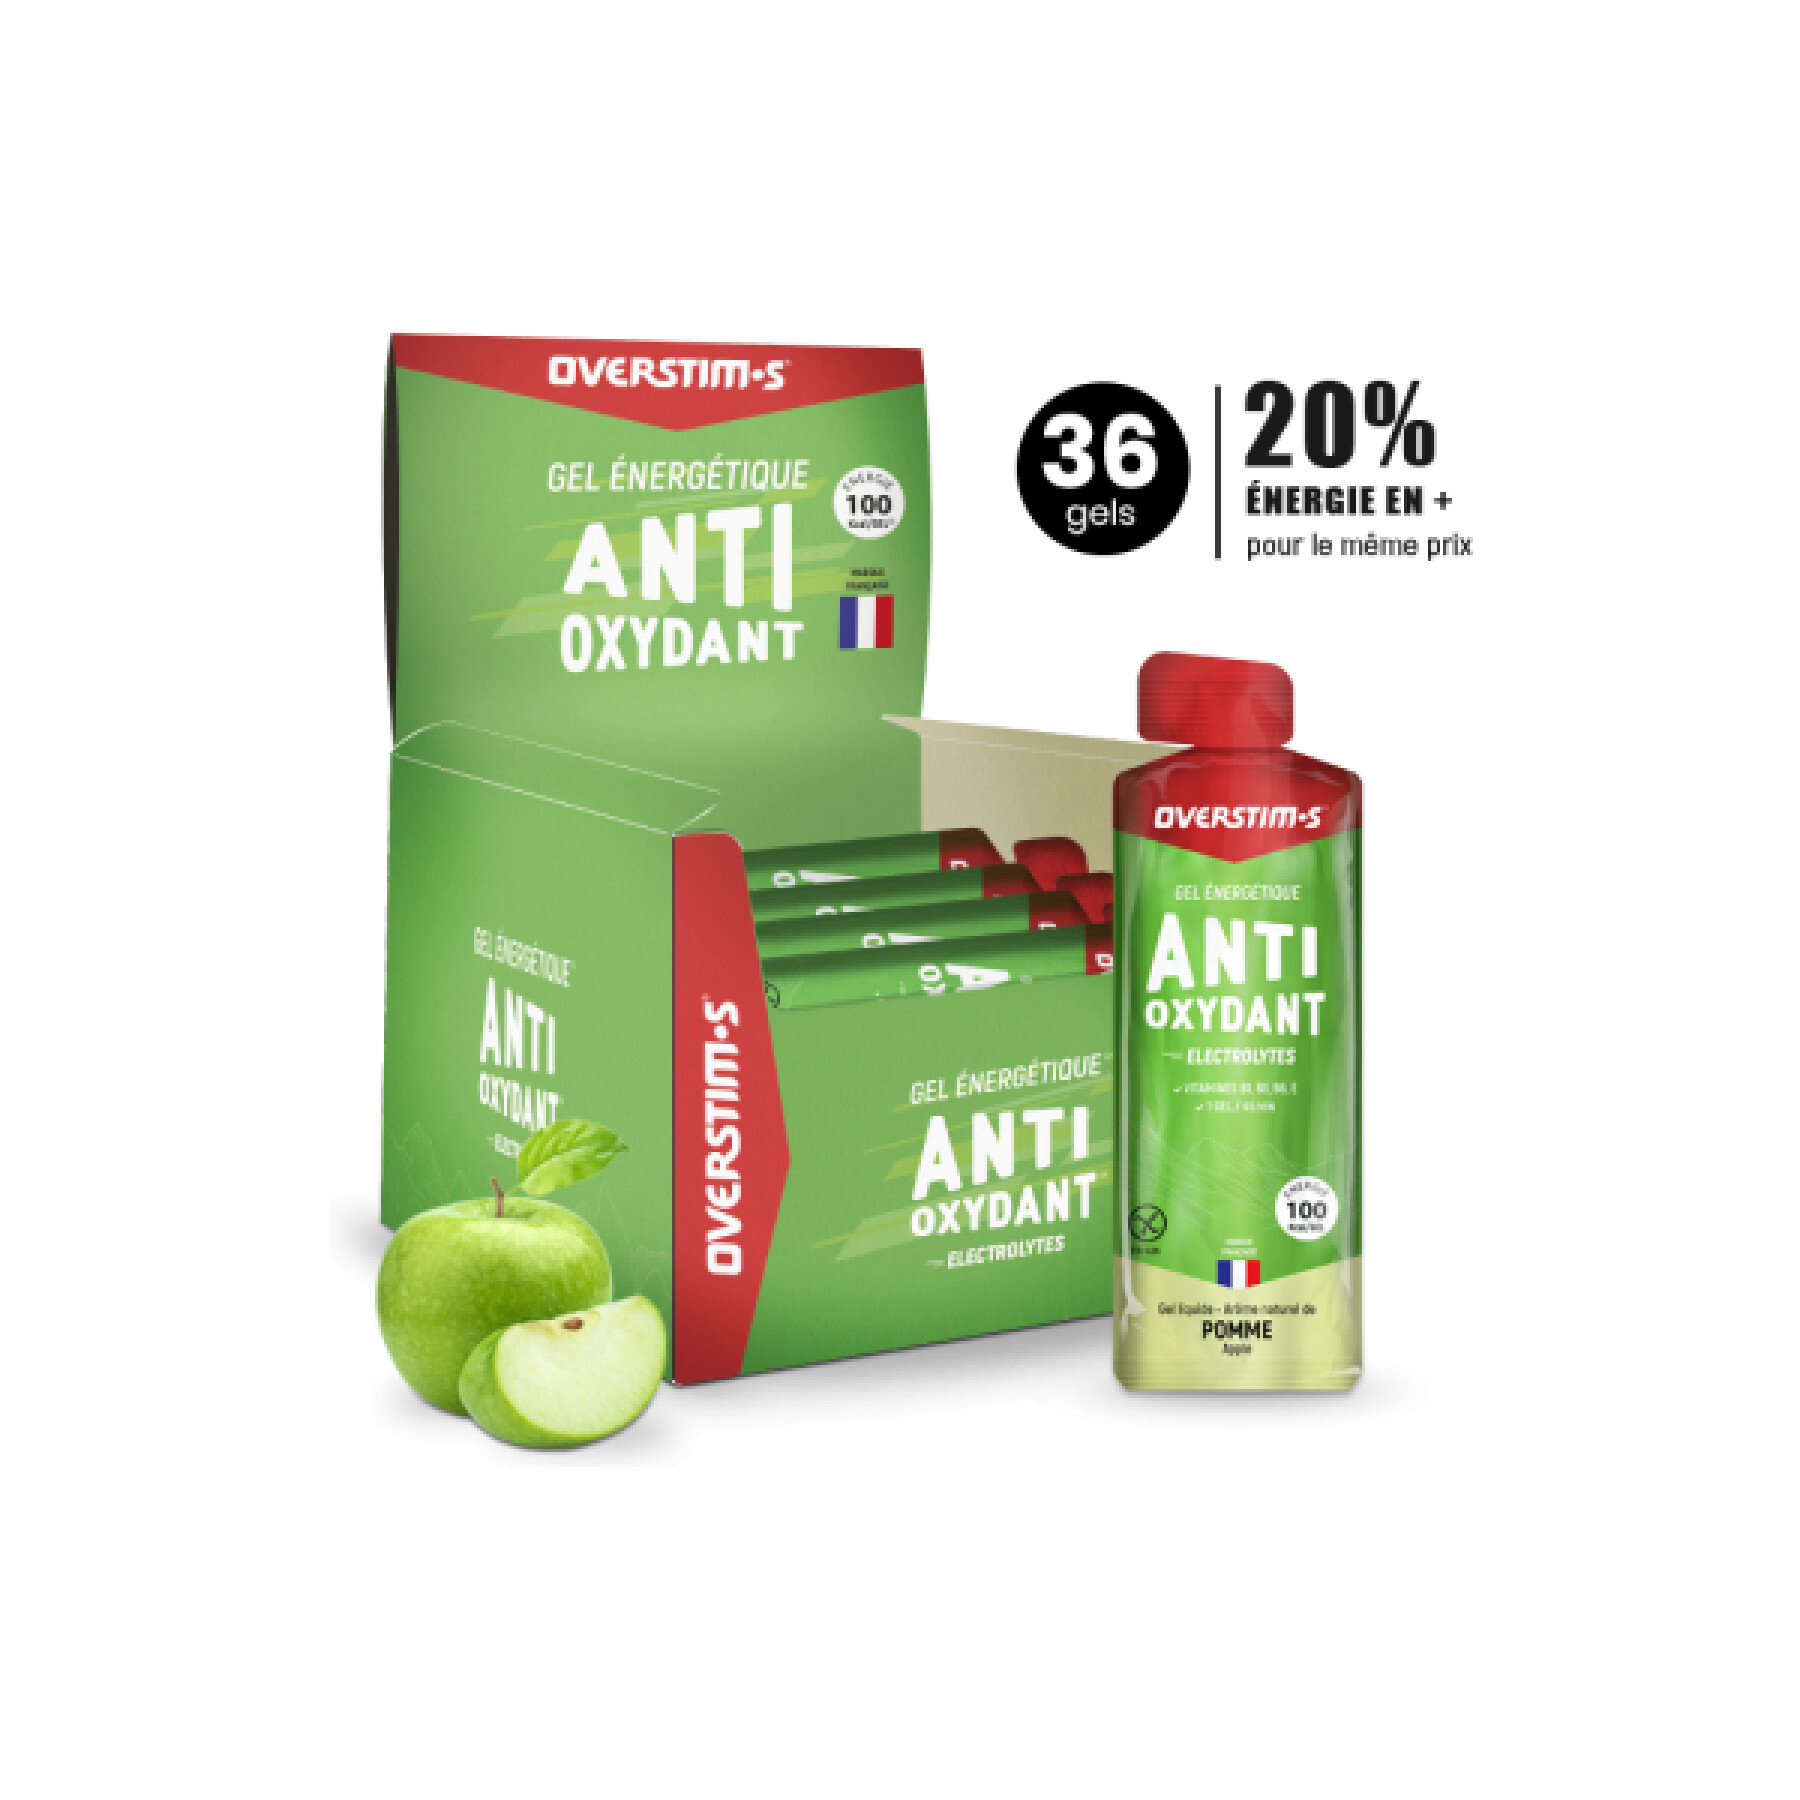 Antioxidantien-Gel mit grünem Apfel Overstim (36 gels)